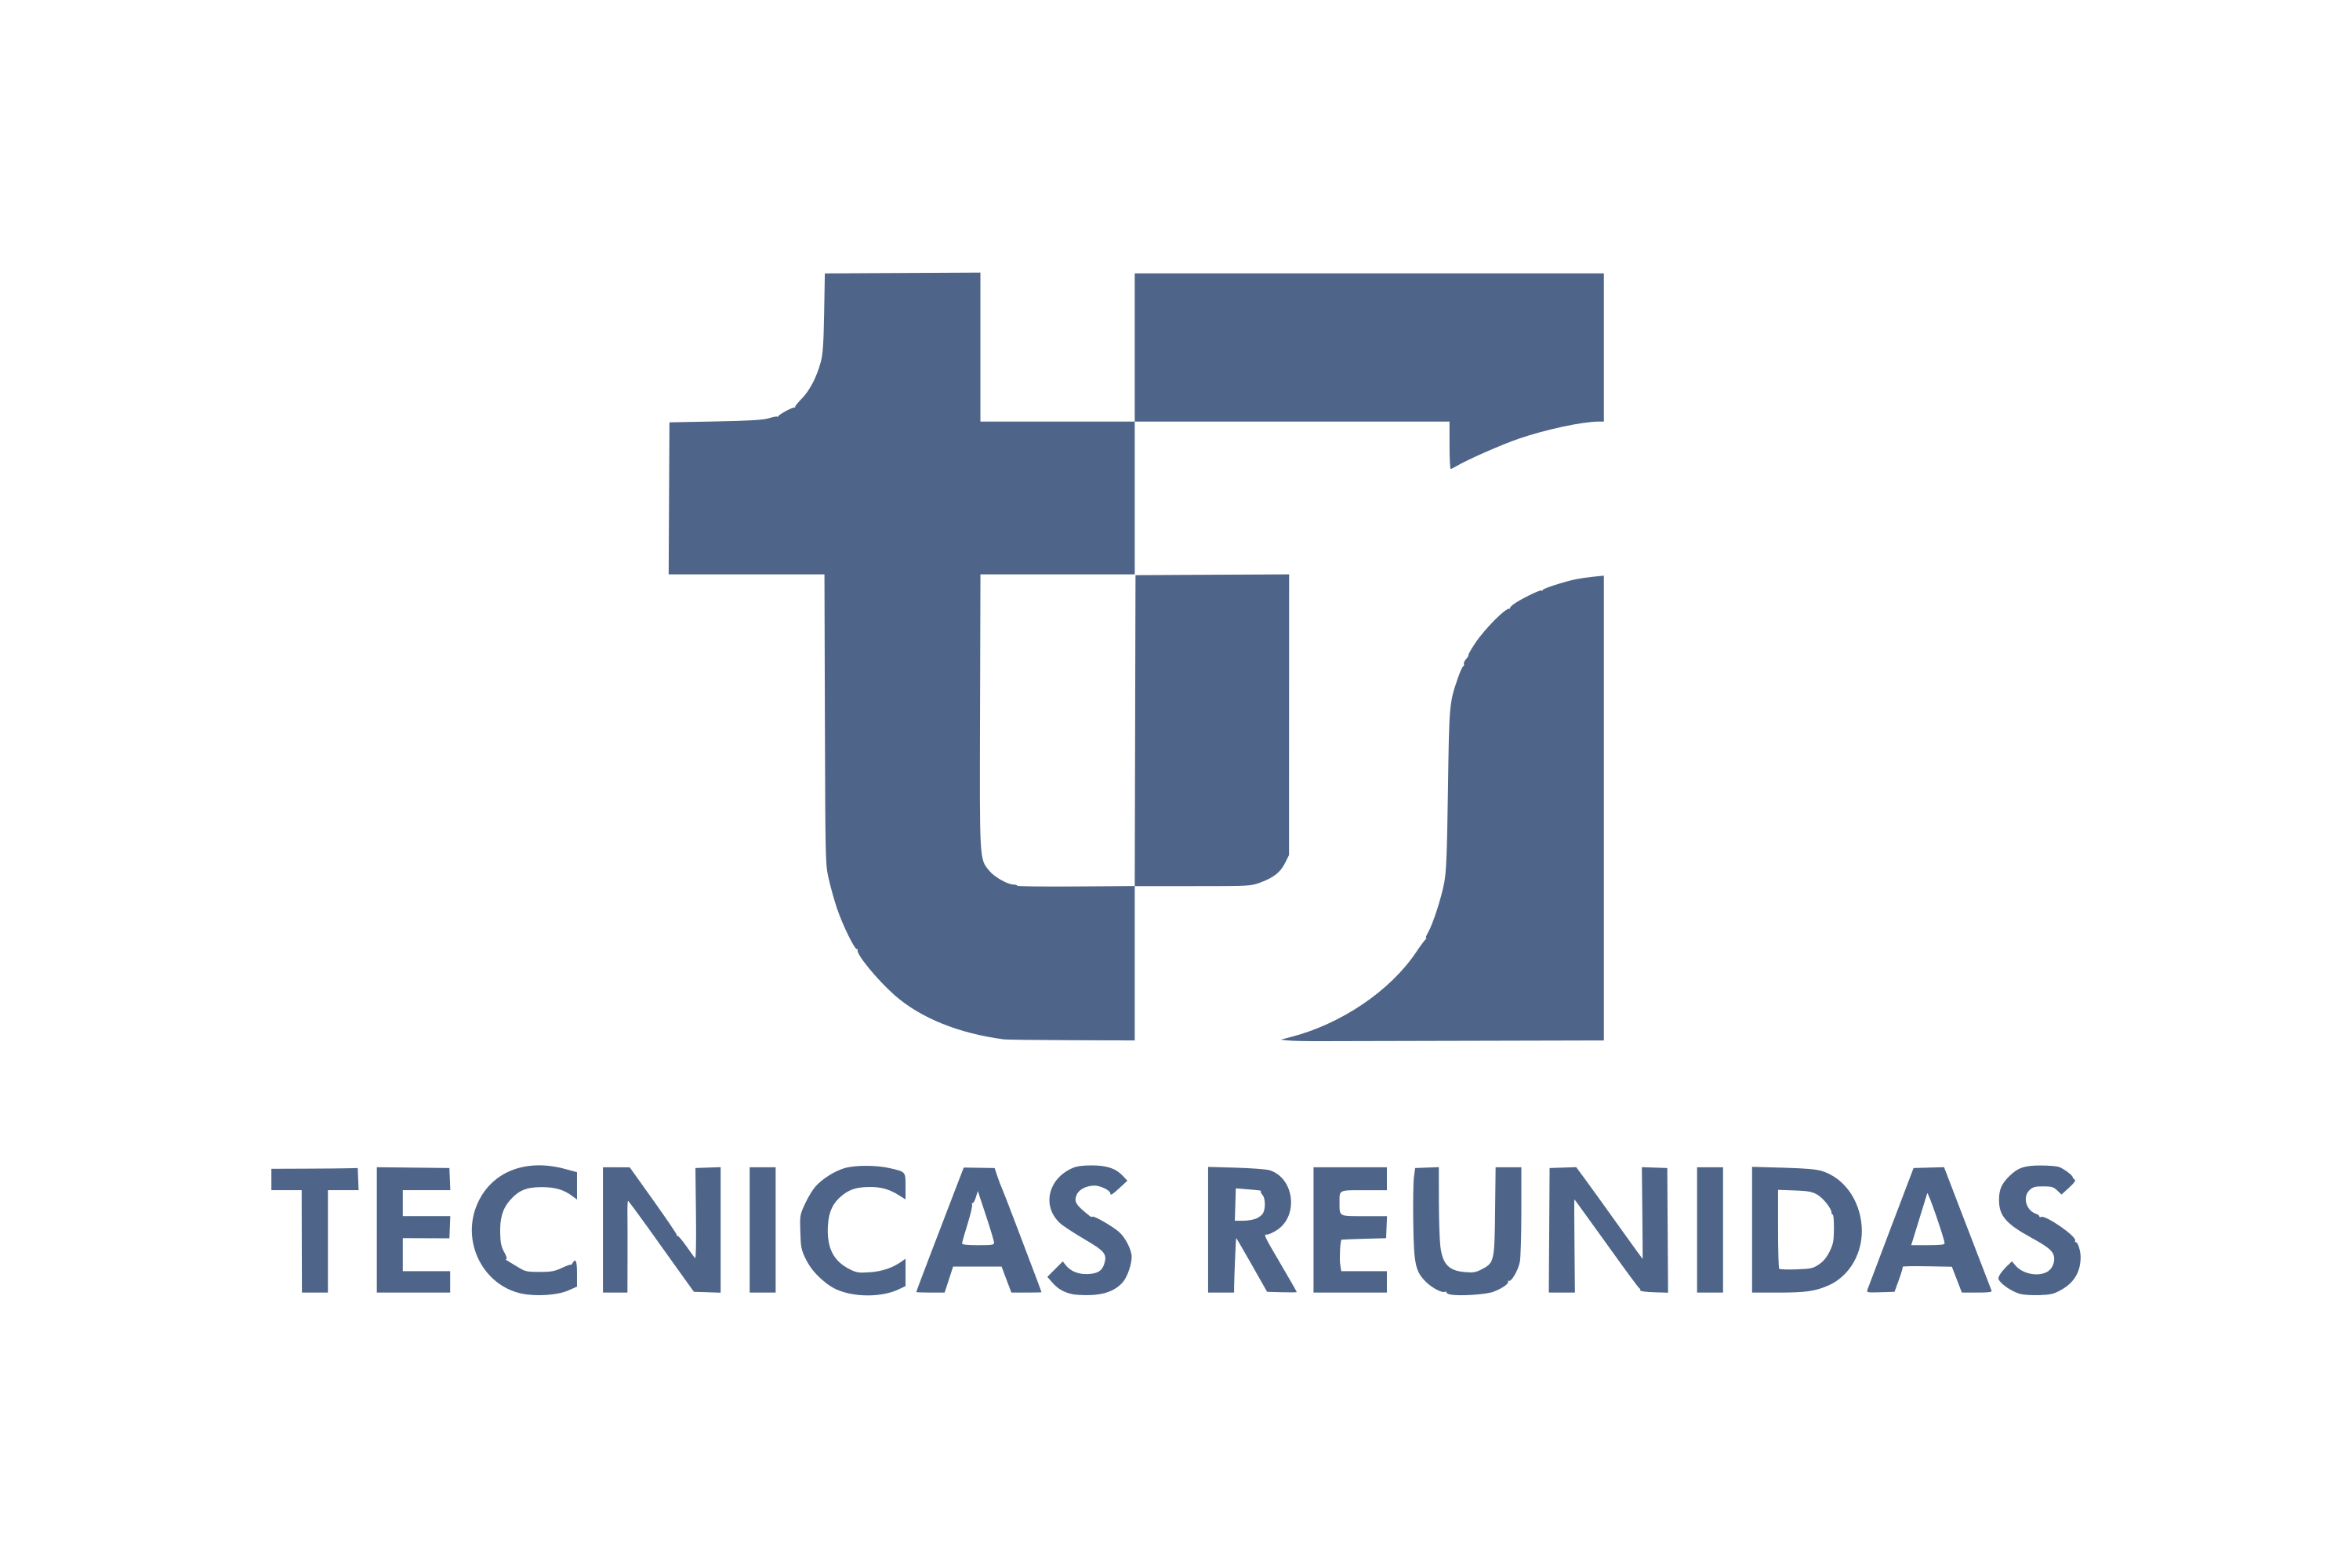 Download Técnicas Reunidas Logo in SVG Vector or PNG File Format - Logo